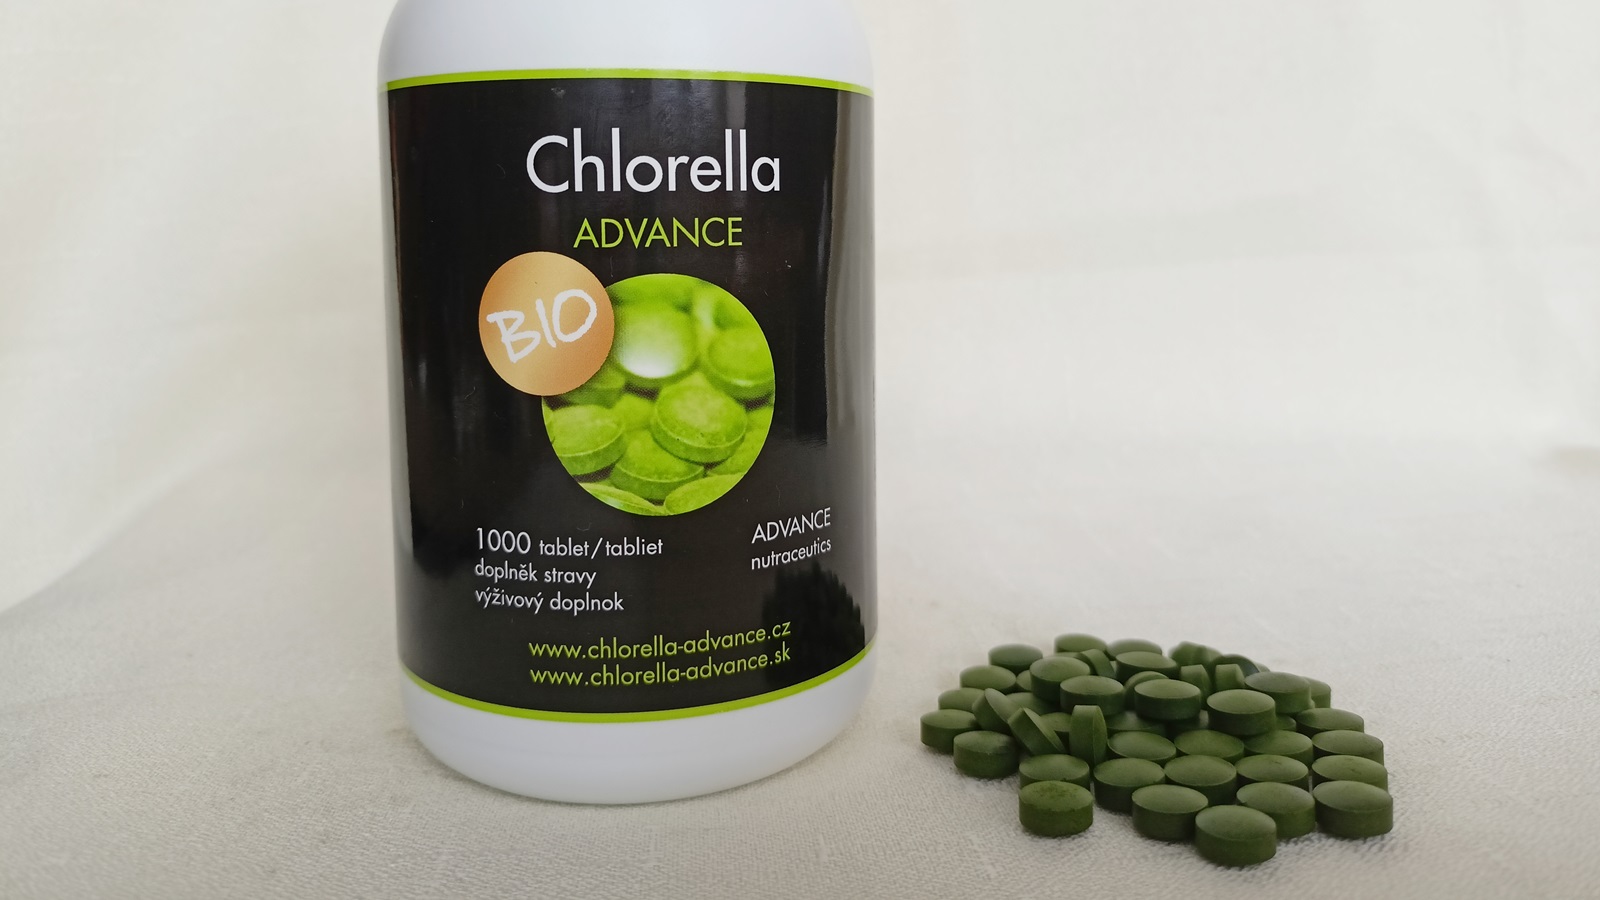 Recenze: Zelené potraviny Chlorella a Spirulina BIO od ADVANCE nutraceutics